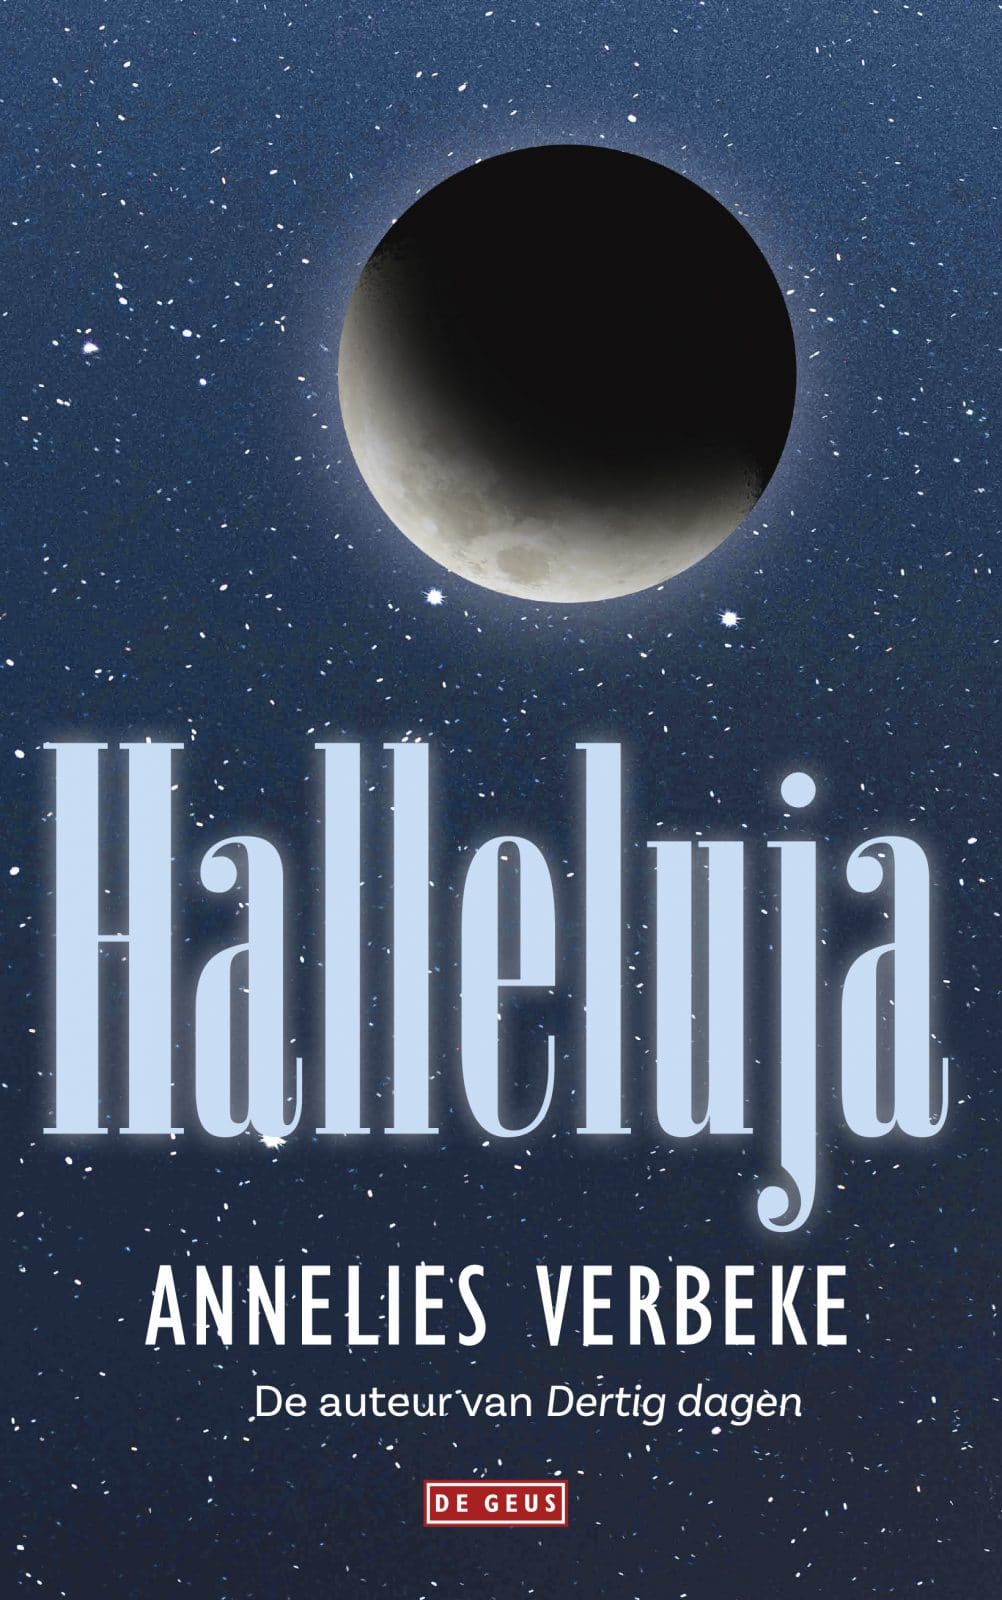 Podcast : Annelies Verbeke parle de son recueil de nouvelles Halleluja